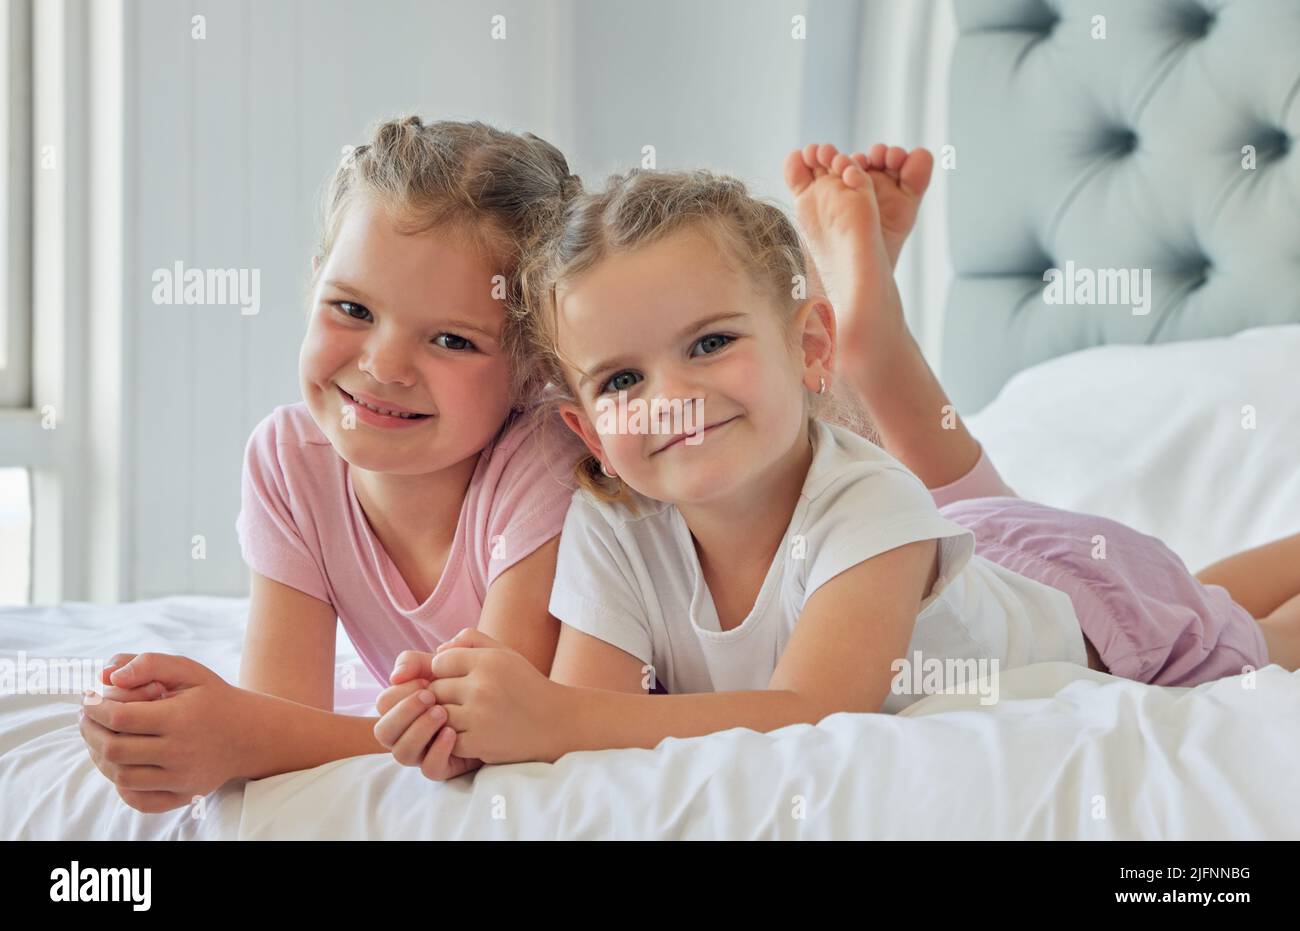 Porträt von Geschwistern, die zusammen spielen. Zwei kaukasische Mädchen entspannen sich zusammen. Schwestern verbringen Zeit miteinander in ihrem Schlafzimmer. Kleine Mädchen zusammen bei Stockfoto